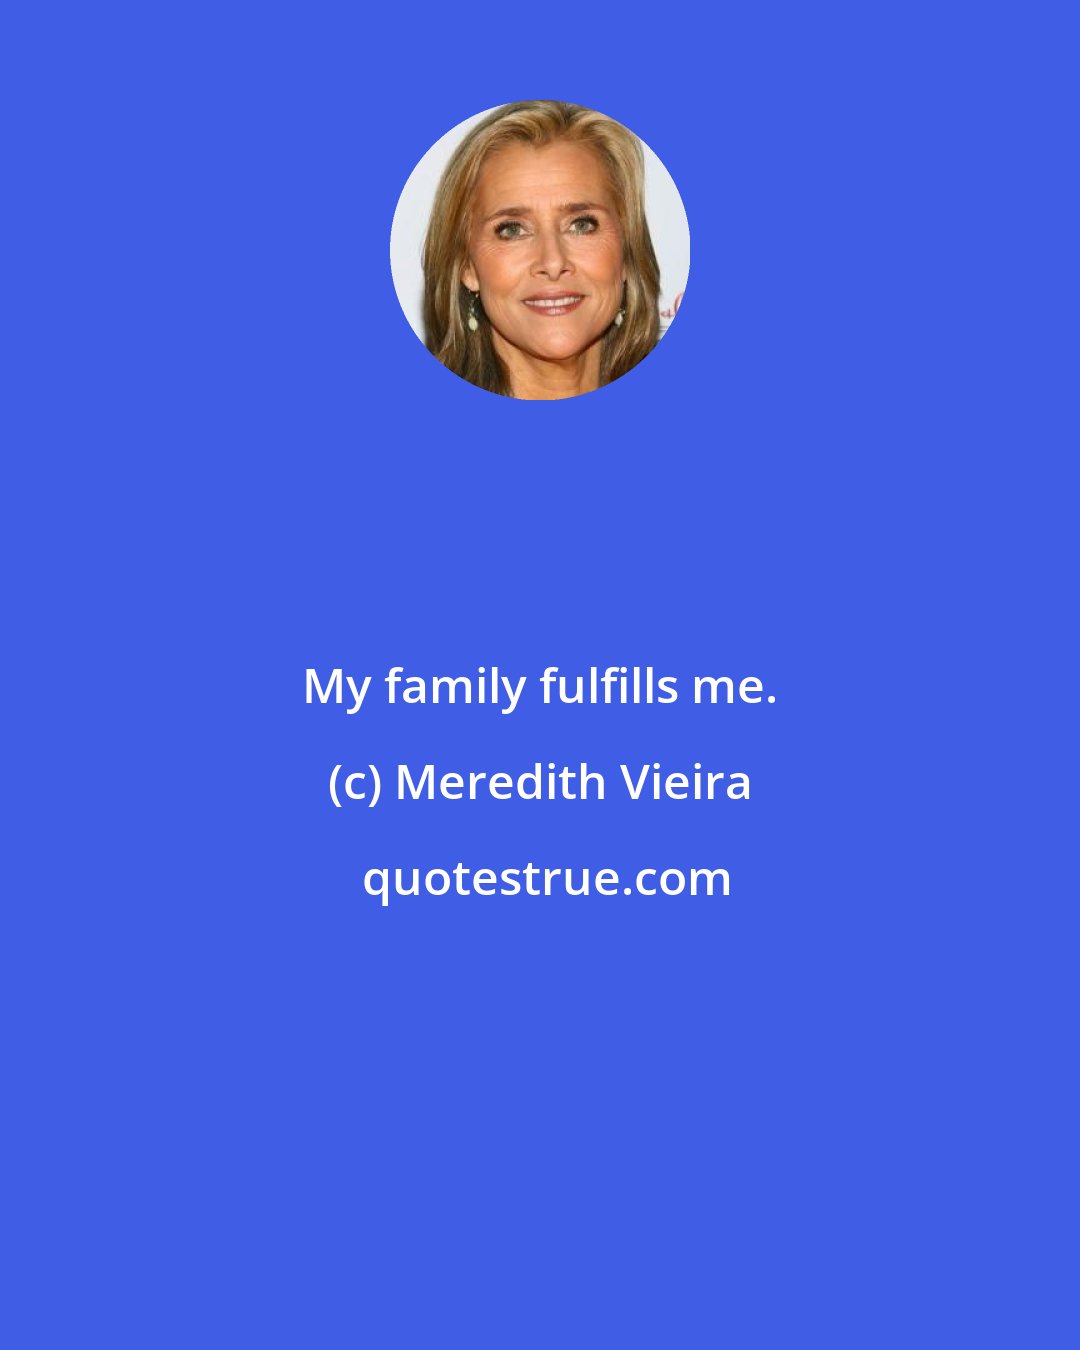 Meredith Vieira: My family fulfills me.